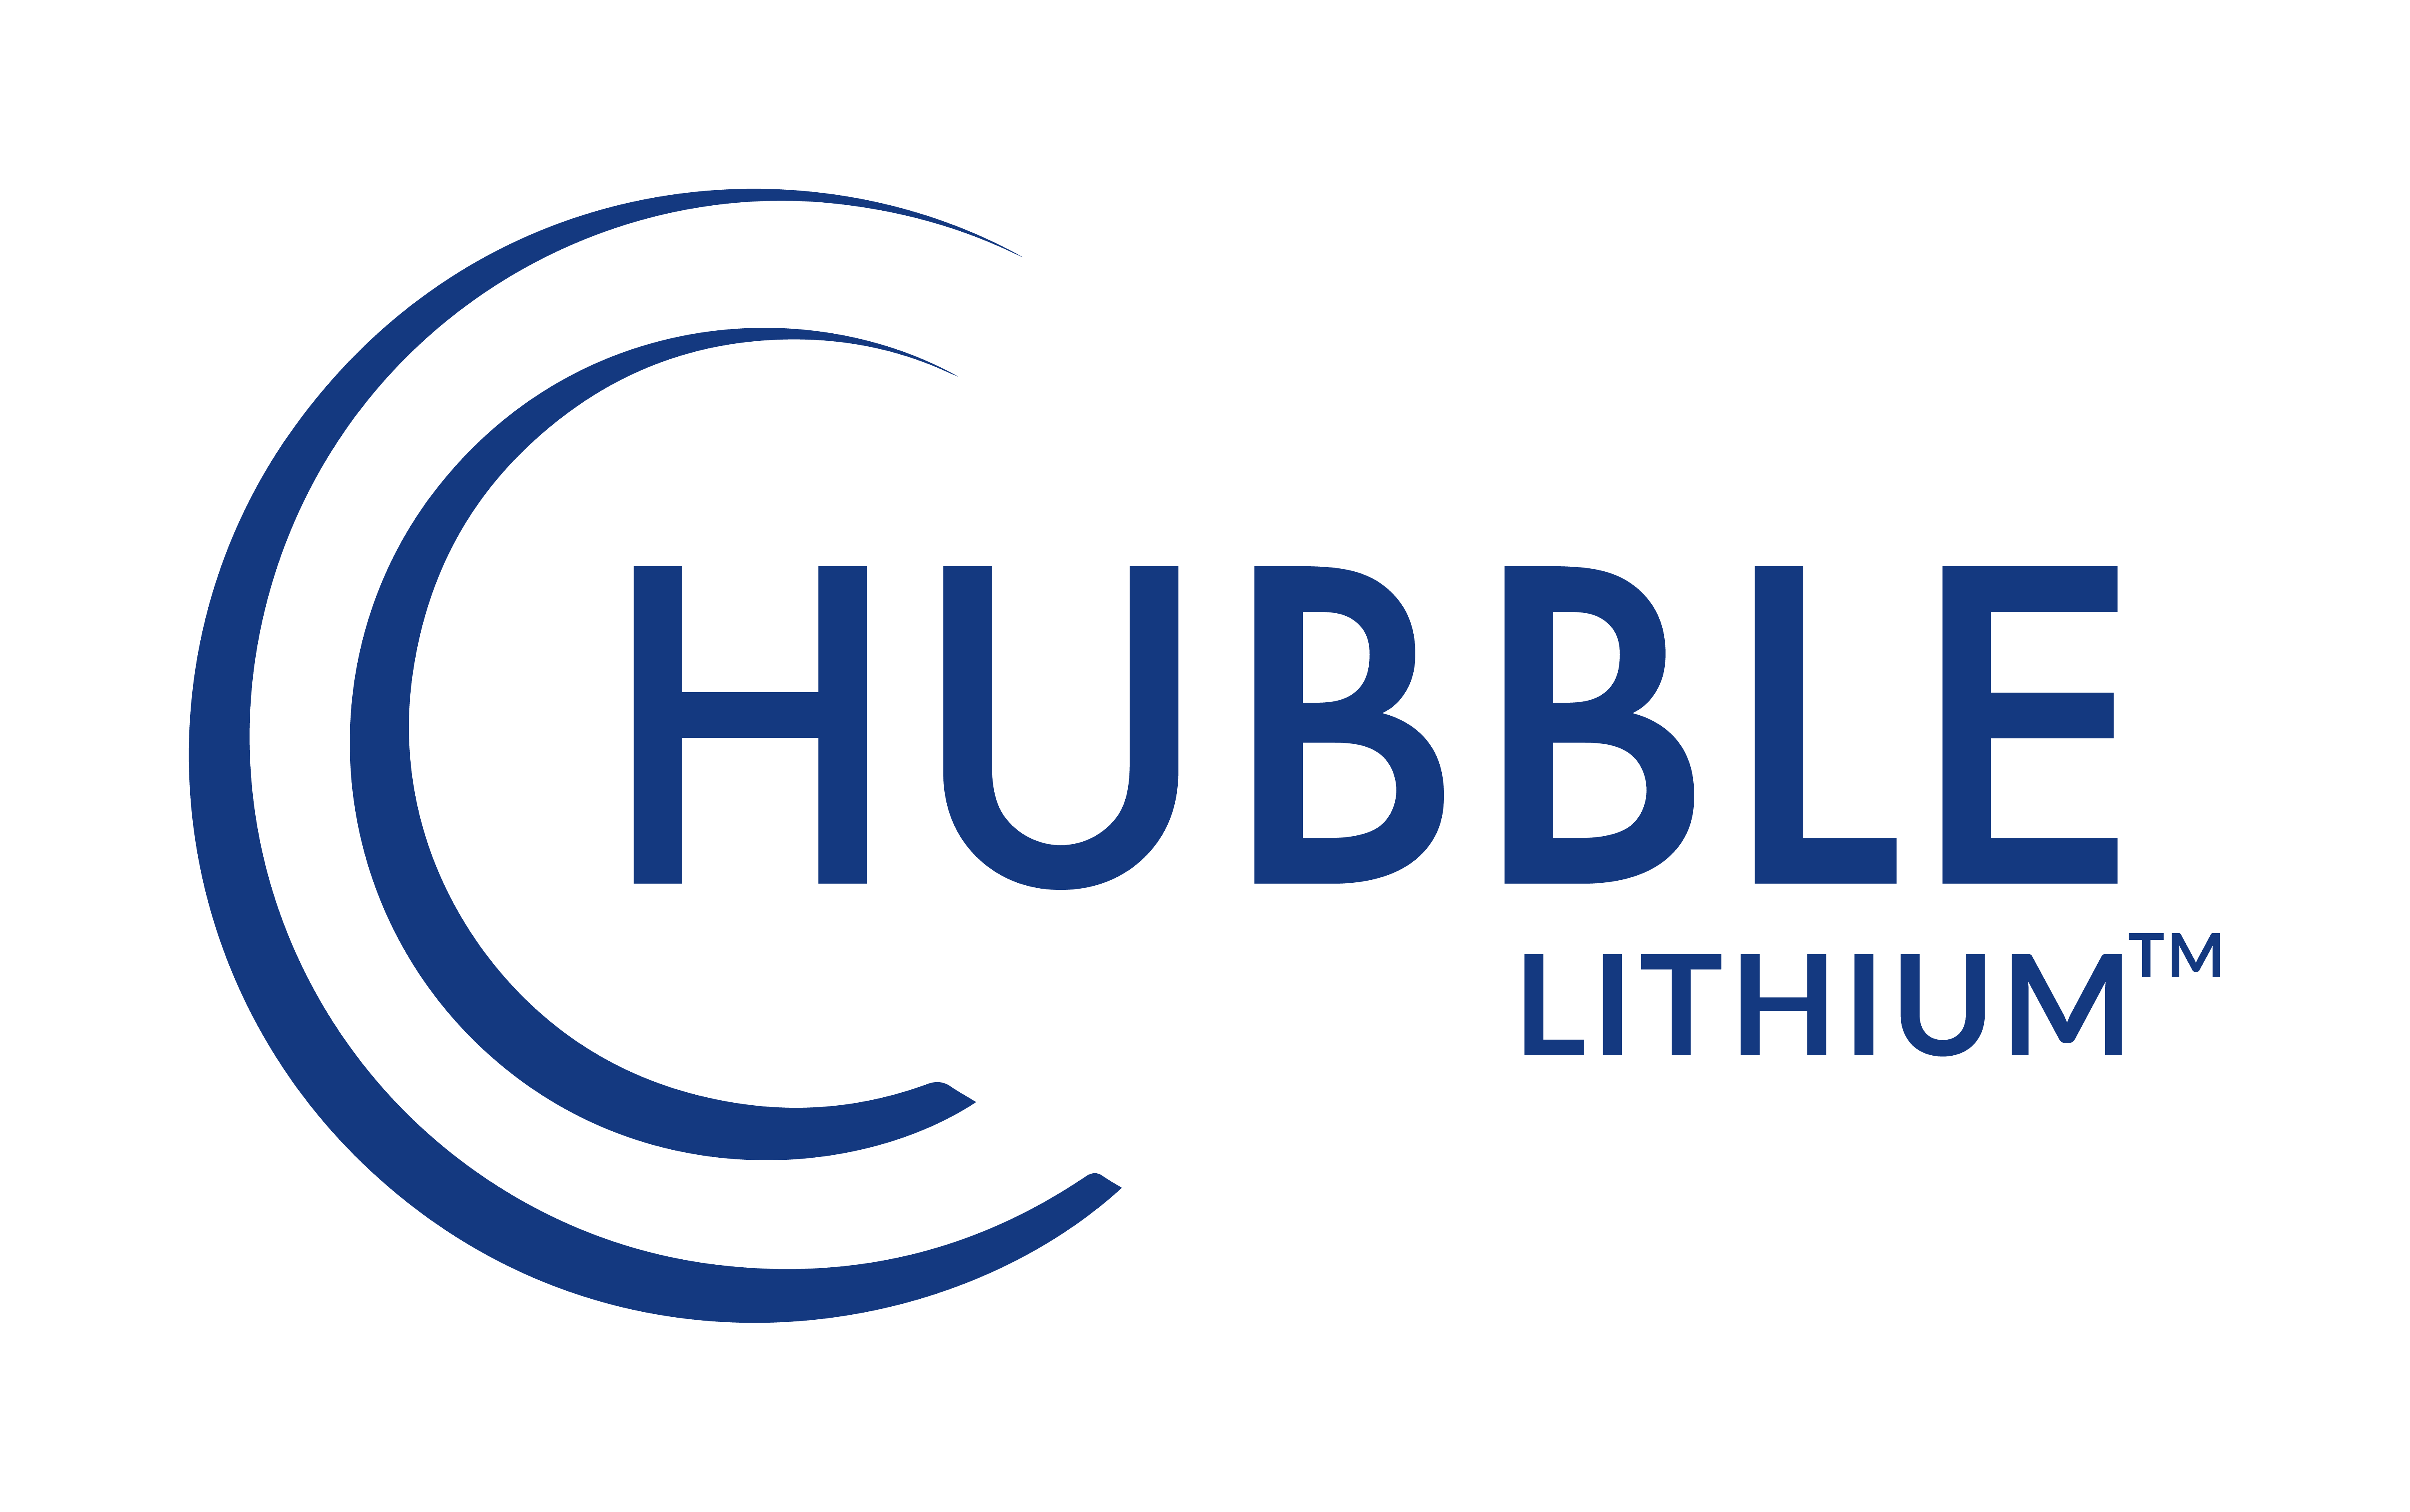 Hubble Lithium logo HR